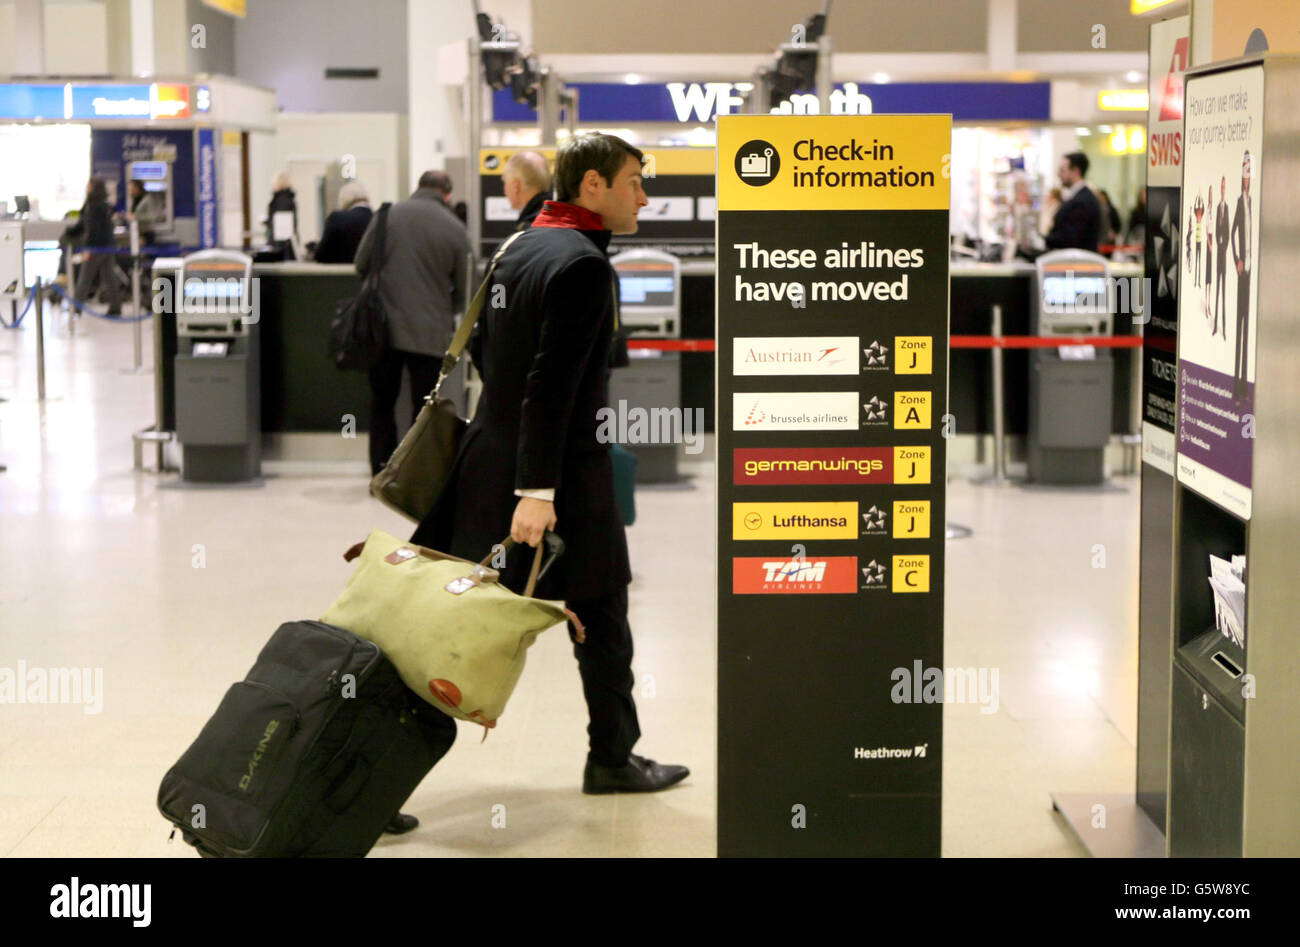 Aéroport de Heathrow - stock.Un passager s'enregistre dans le terminal 1 de l'aéroport de Heathrow Banque D'Images